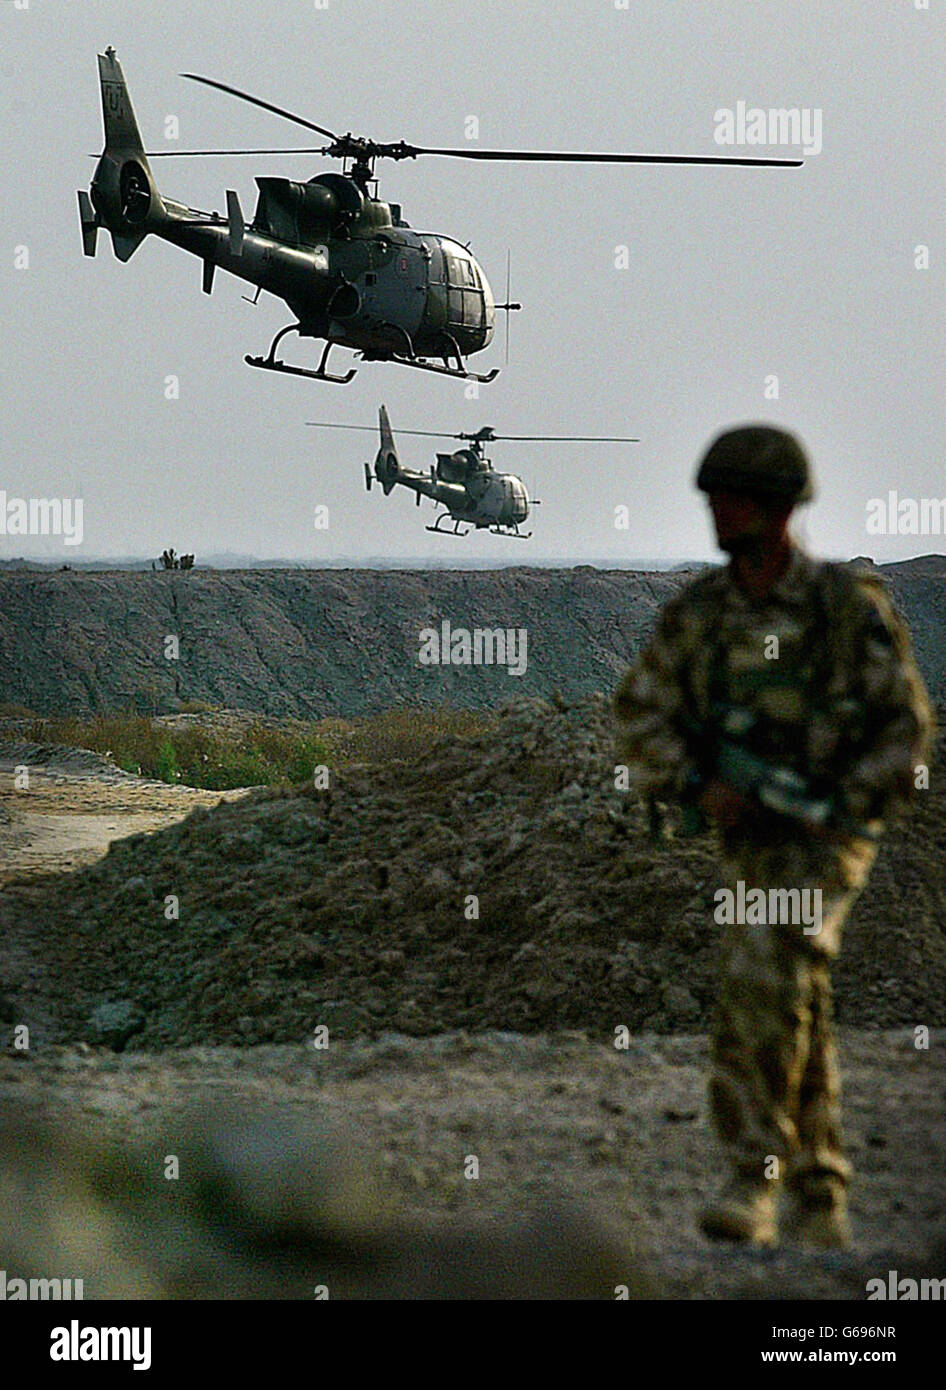 Le forze britanniche in Iraq Foto Stock